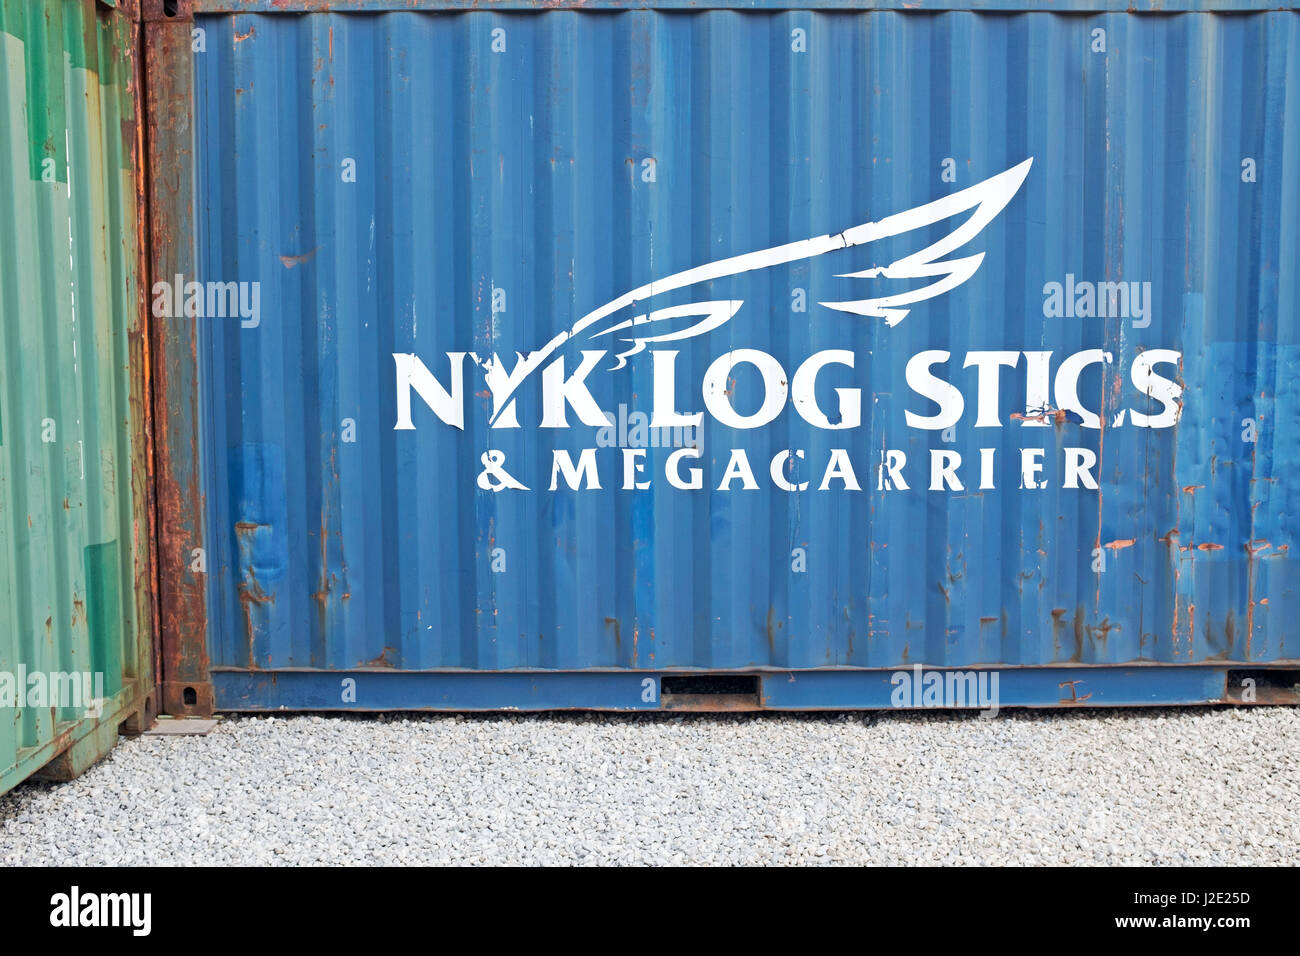 NYK Logistics & Megarrier Trockenfracht-Frachtcontainer Backbord in Cleveland, Ohio, Vereinigte Staaten von Amerika. Stockfoto